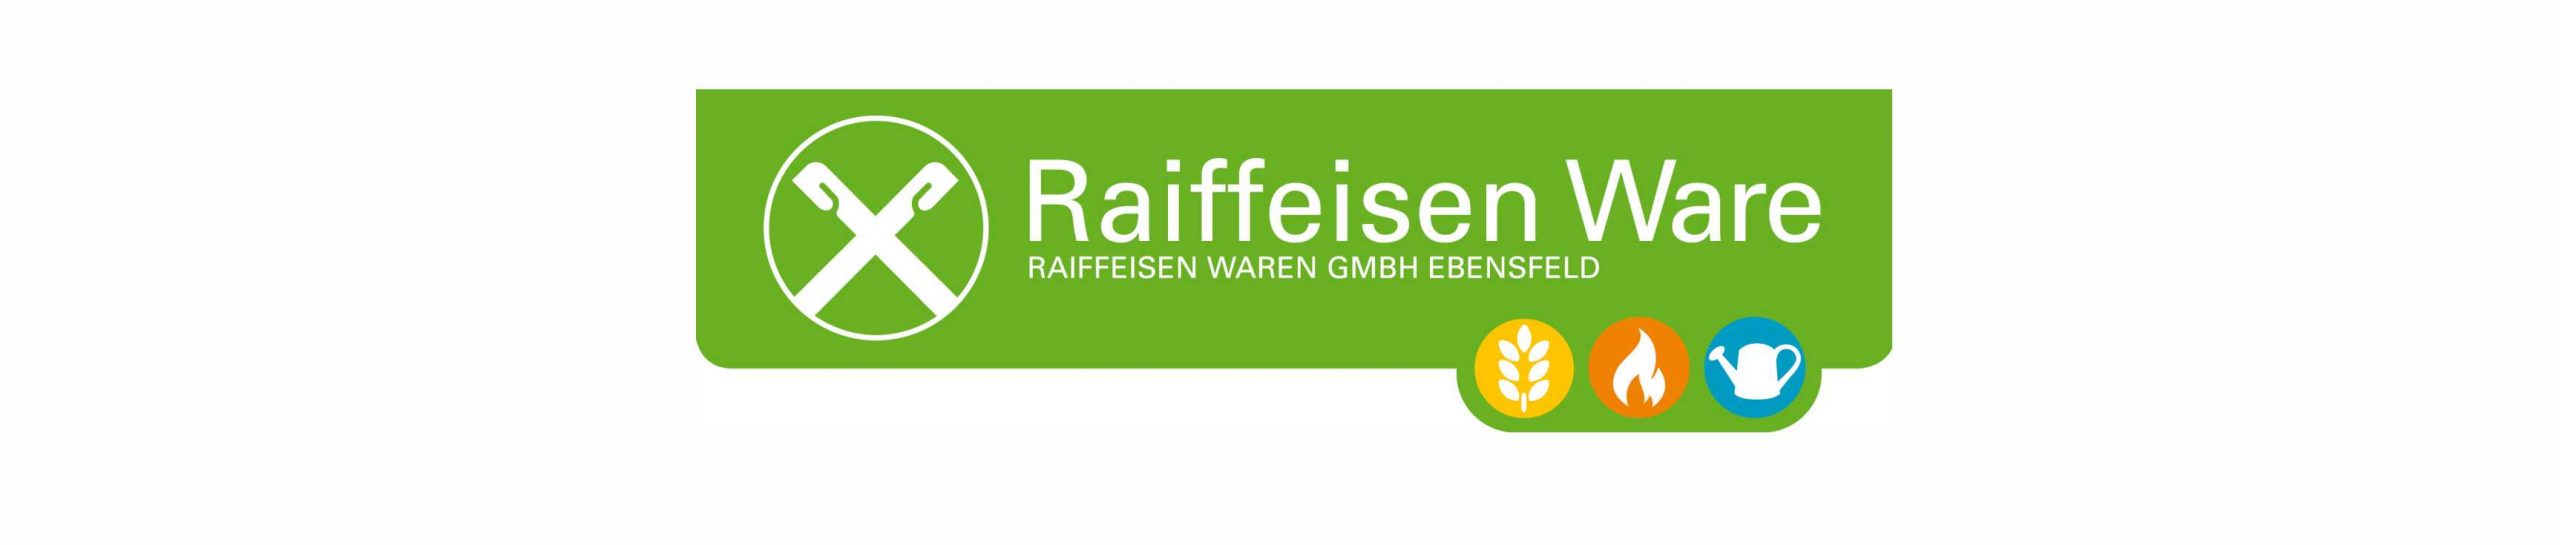 Raiffeisen Waren GmbH Ebensfeld Heimwerkermarkt